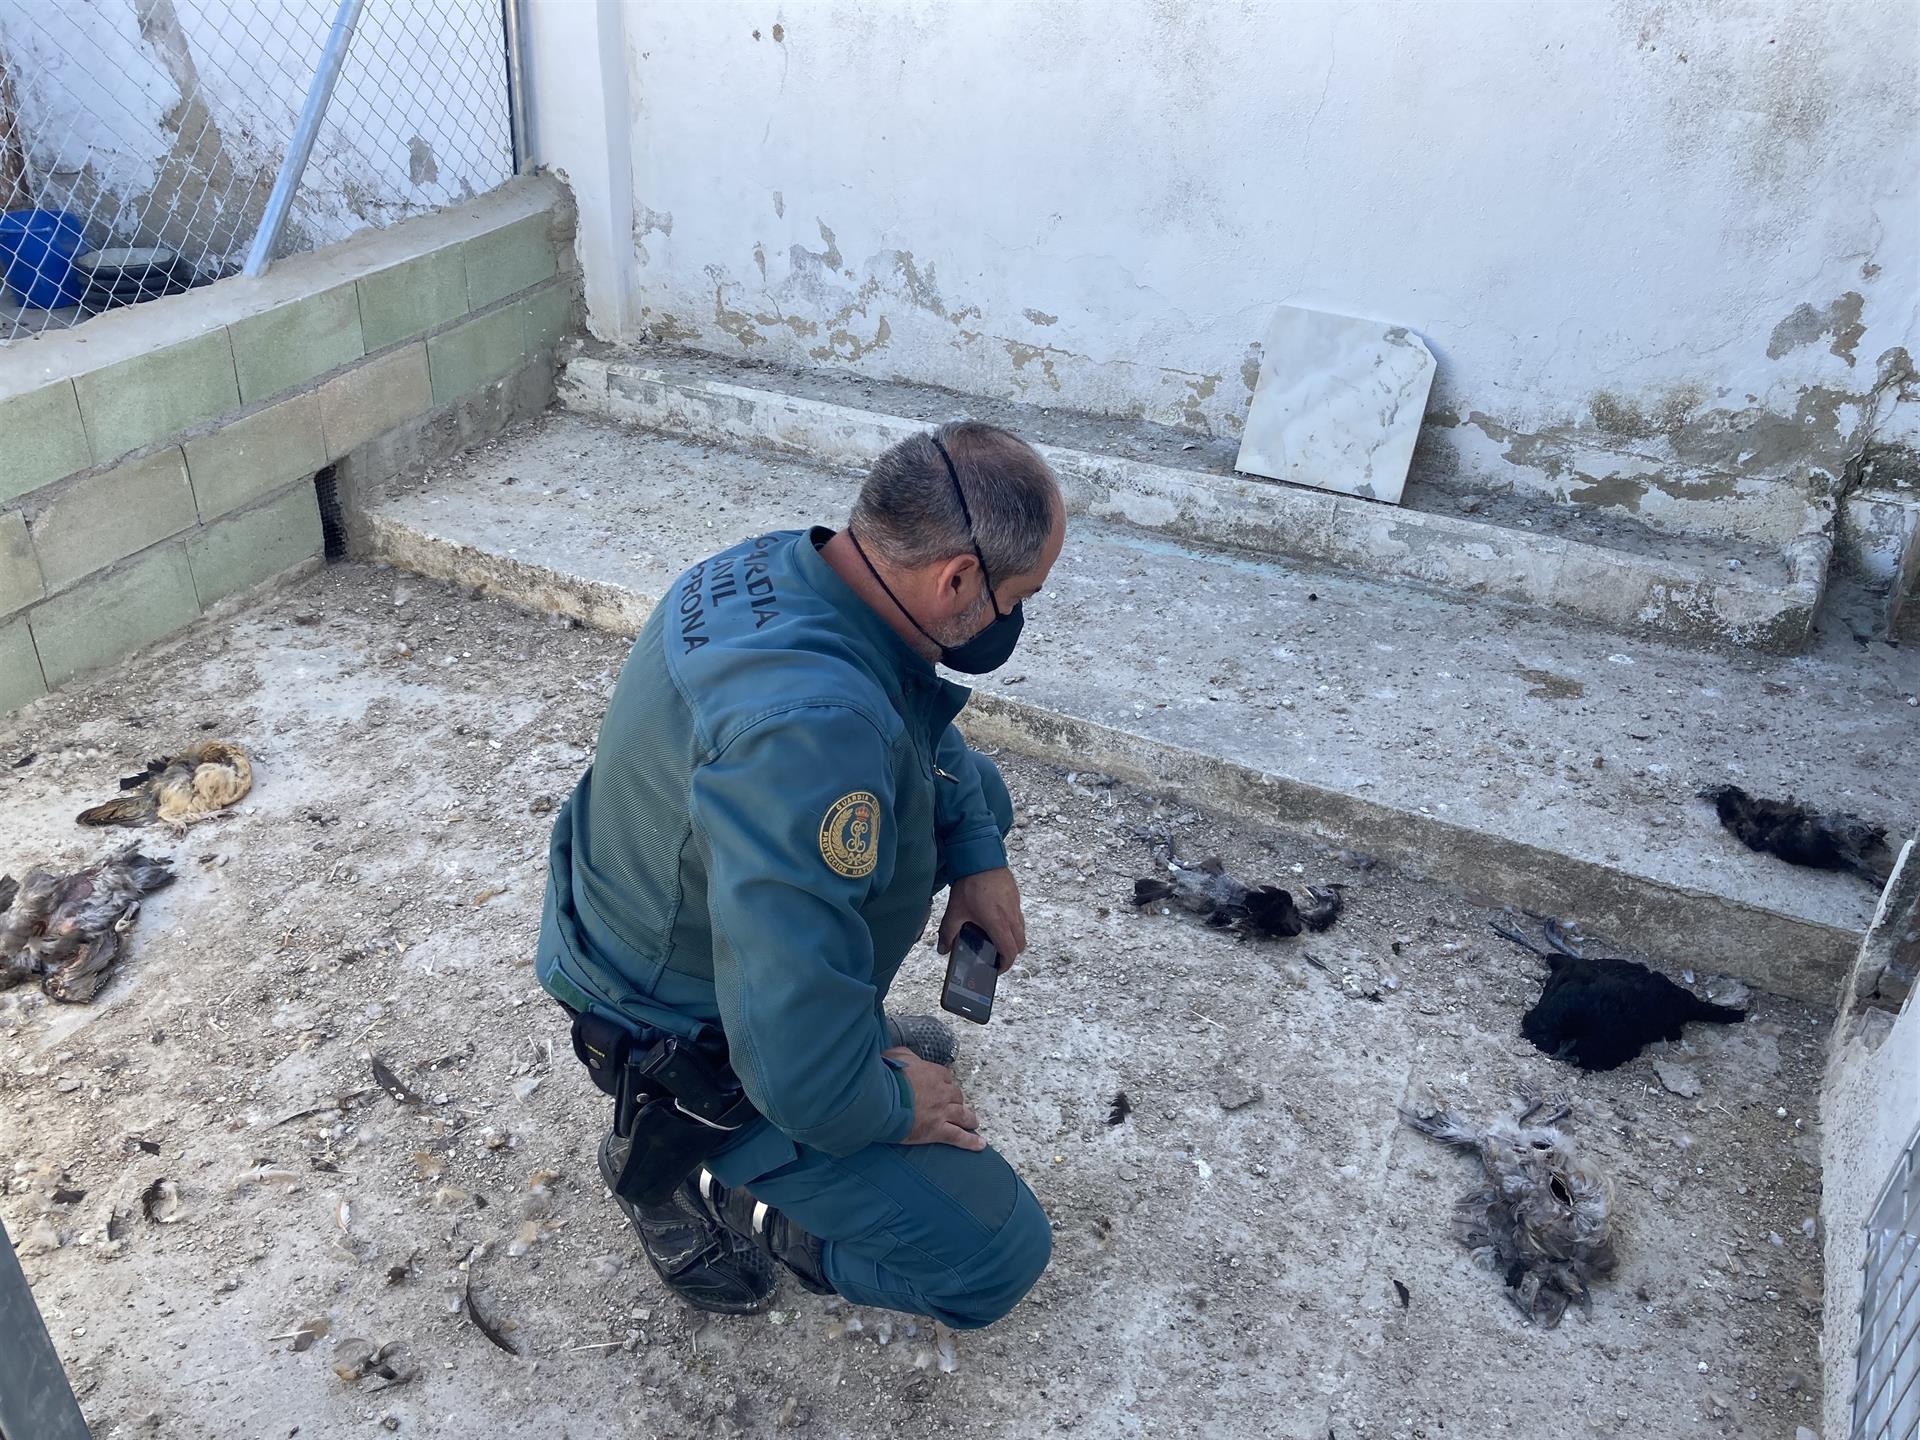  Tres galgos, 29 gallinas y 15 canarios muertos: el nuevo caso de maltrato animal en Córdoba